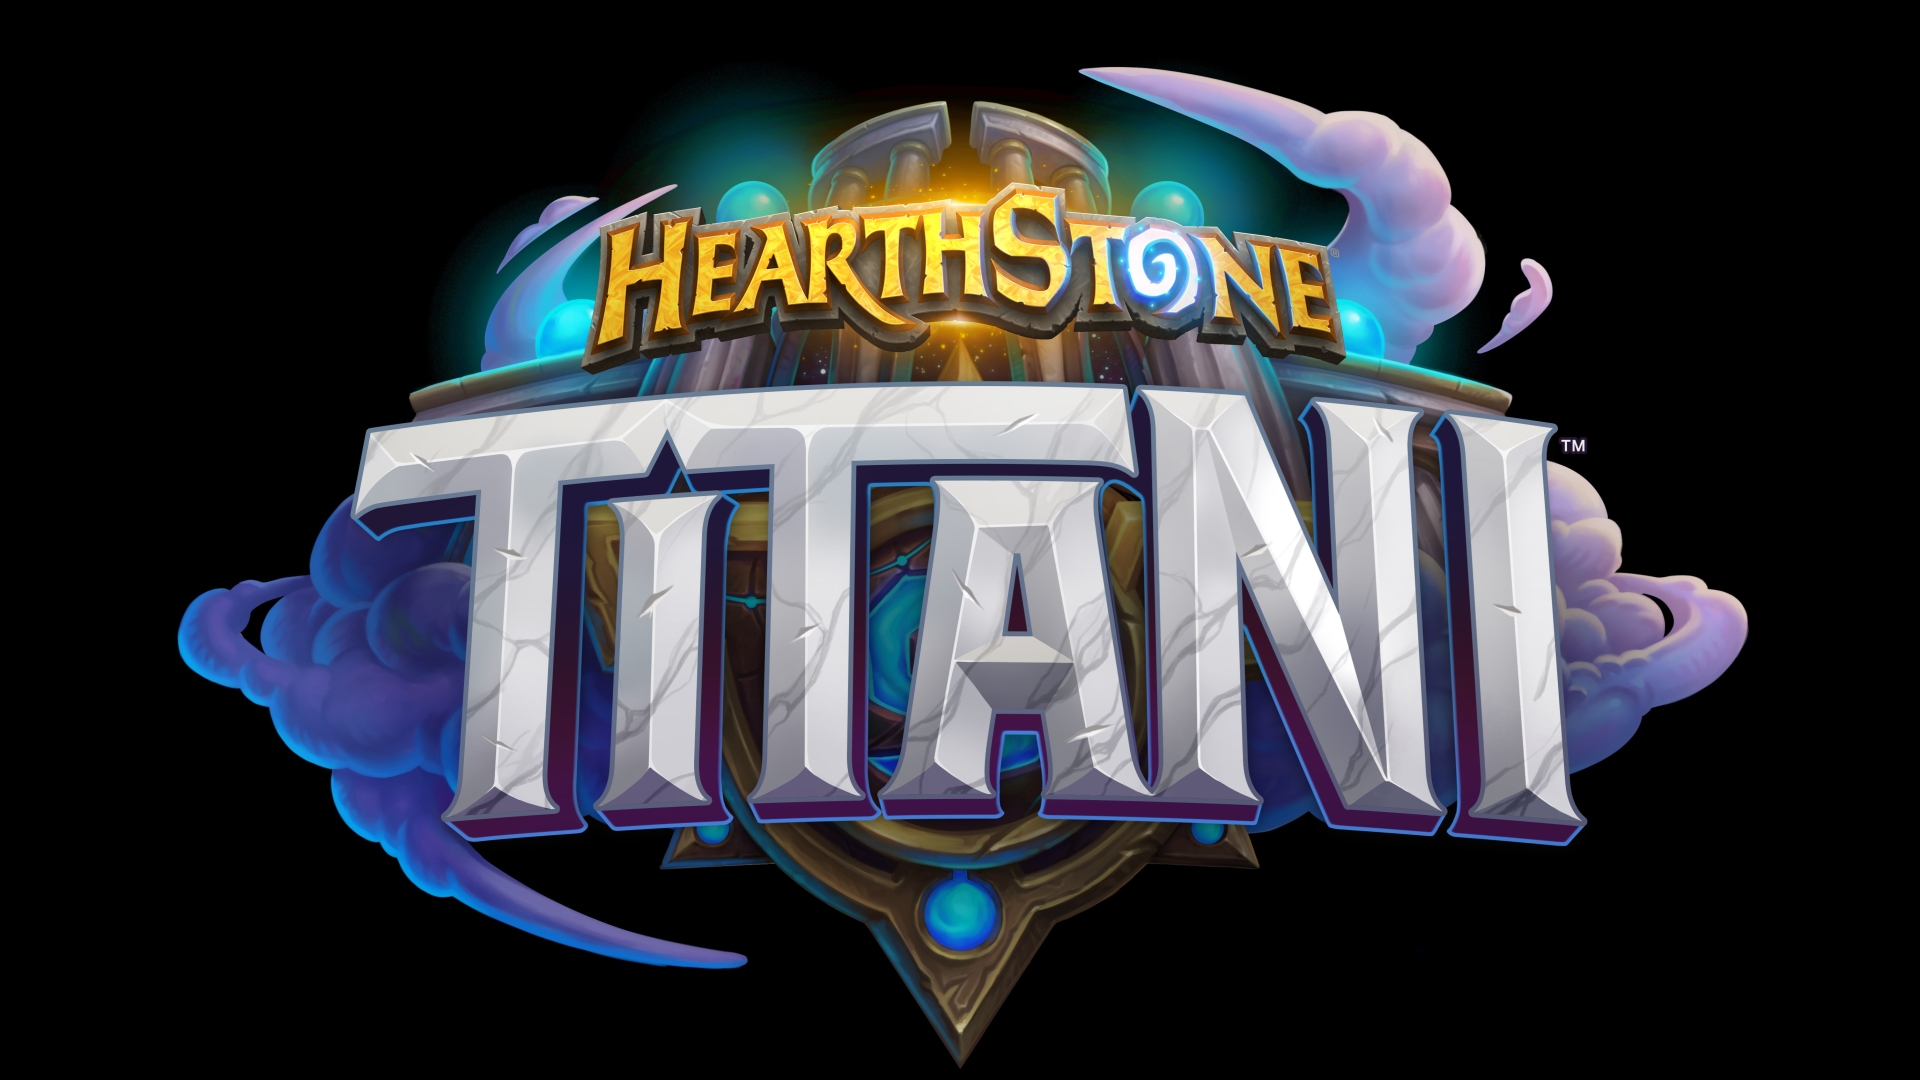 Hearthstone si prepara a fare il botto con TITANI, l'ultima espansione in arrivo ad agosto!